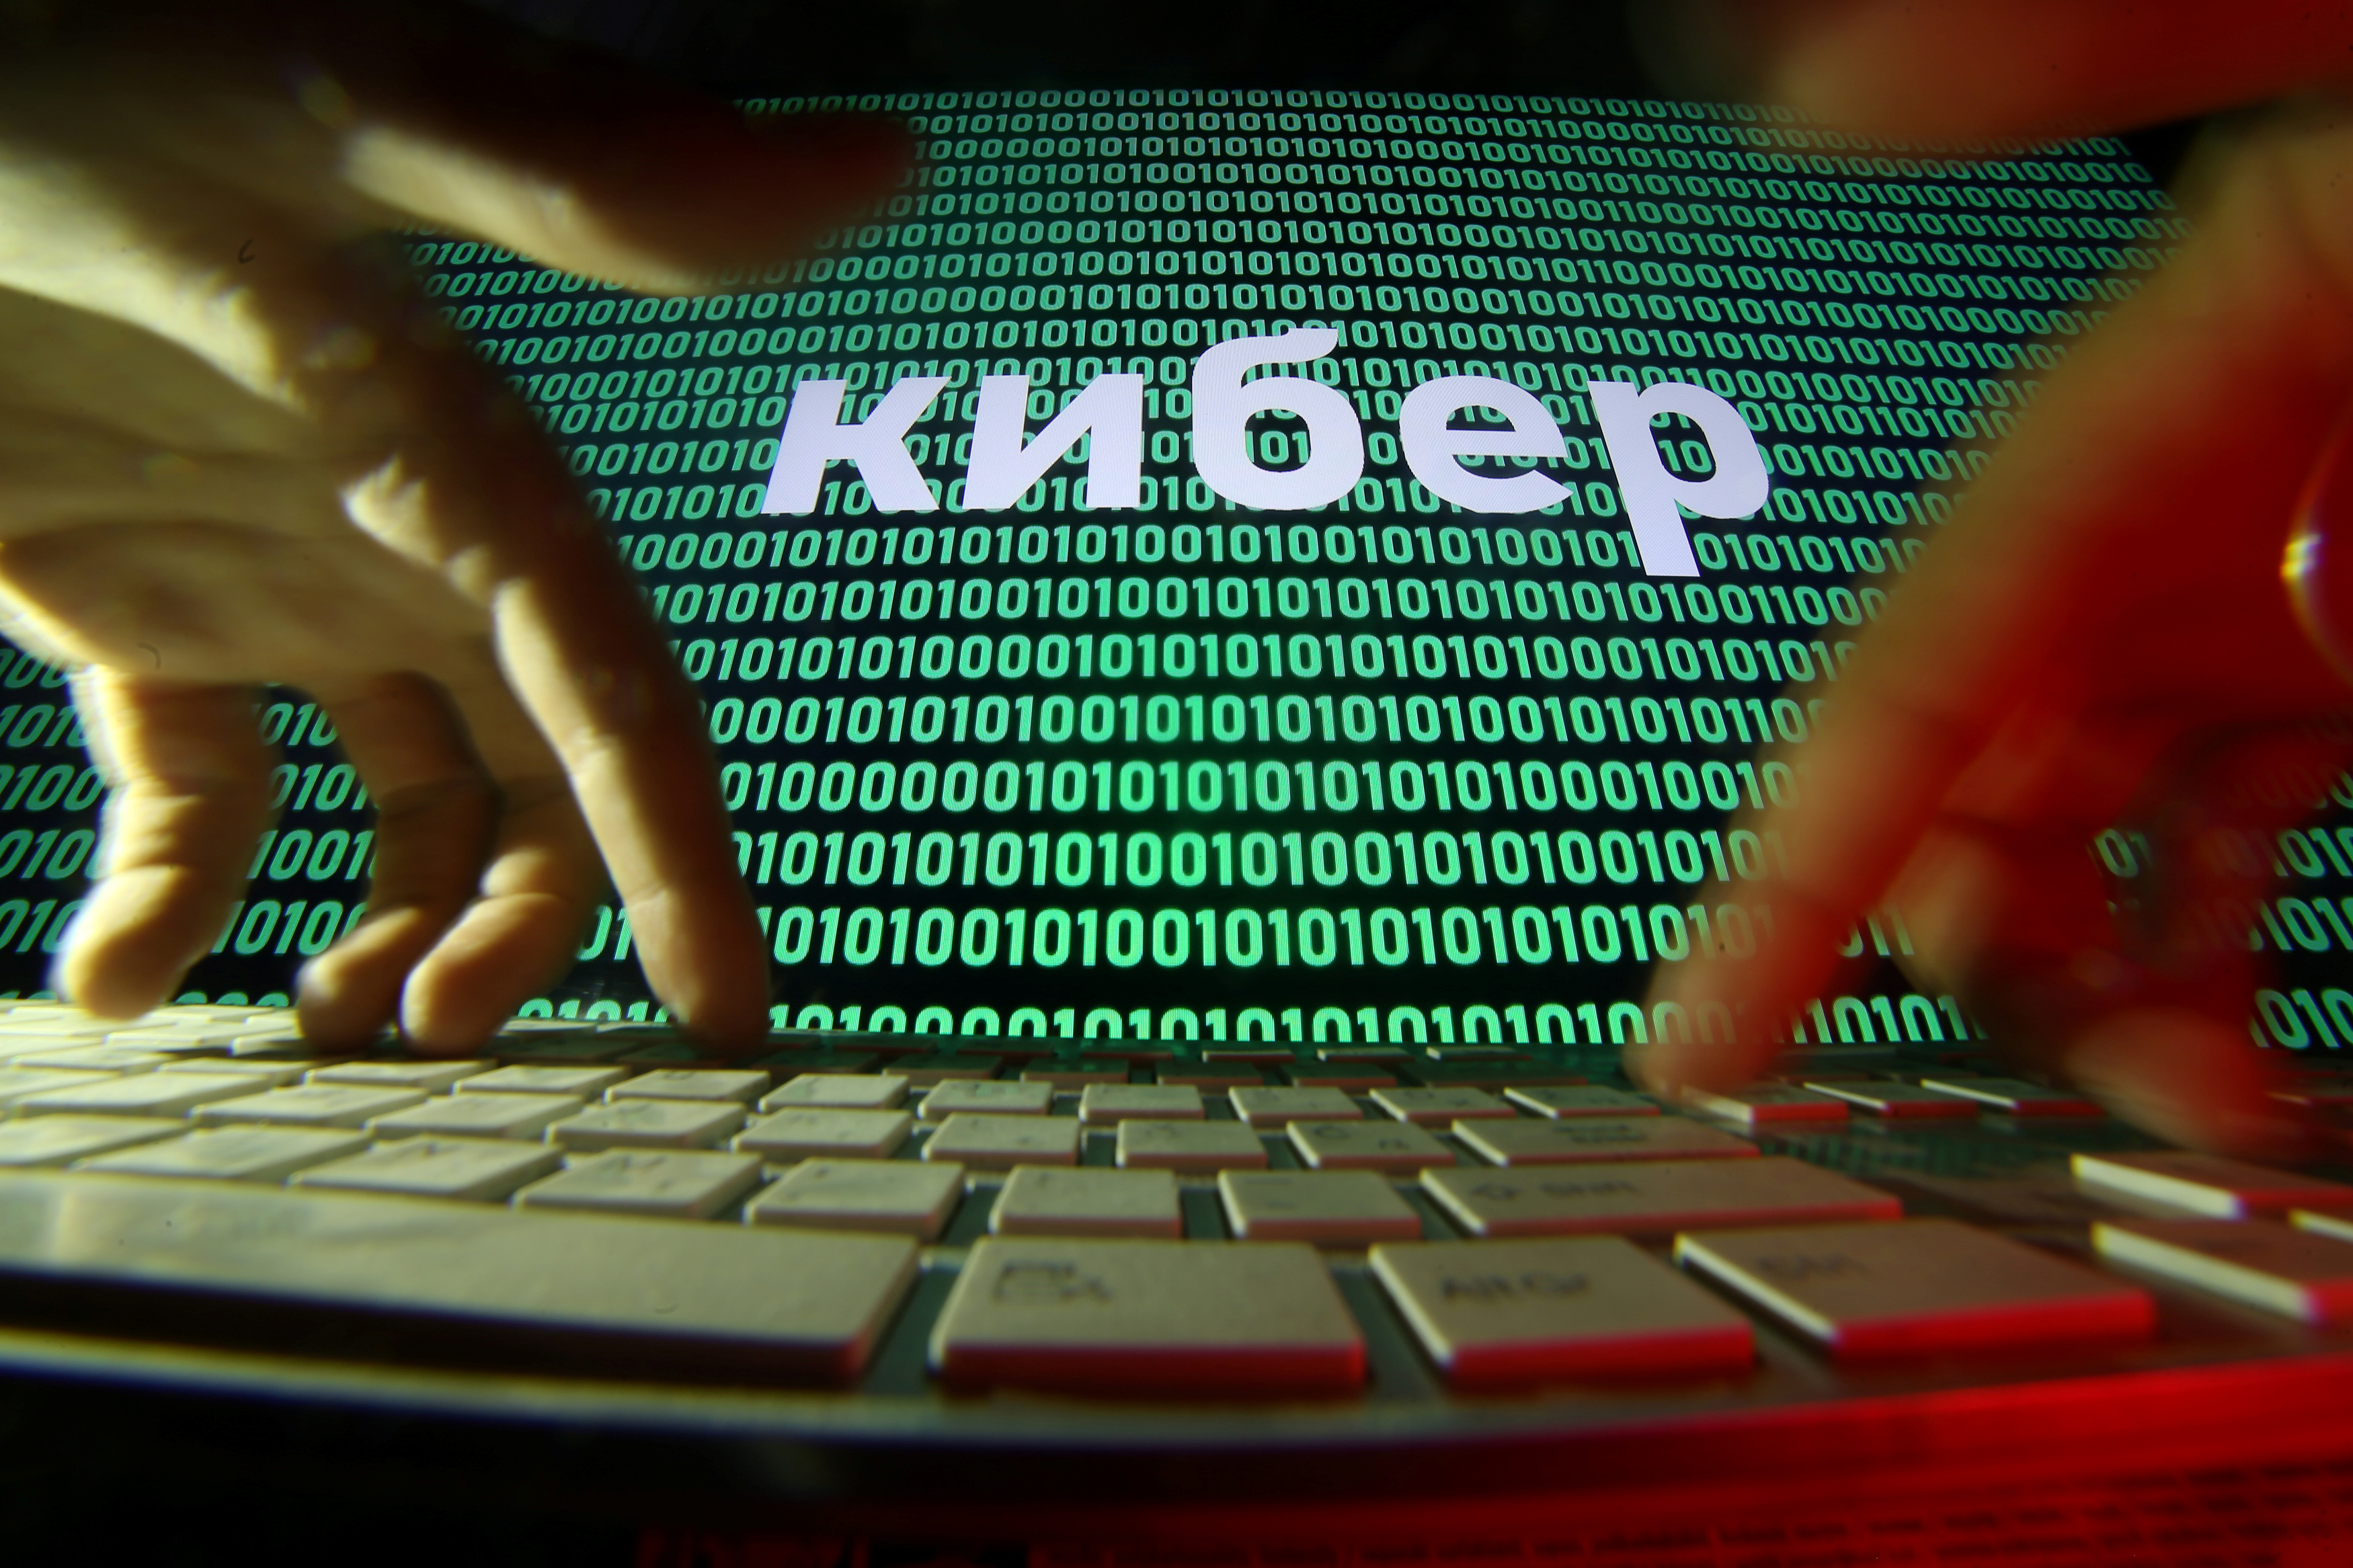 Etats-Unis : une cyberattaque avec rançon vise en masse des entreprises via la logiciel Kaseya